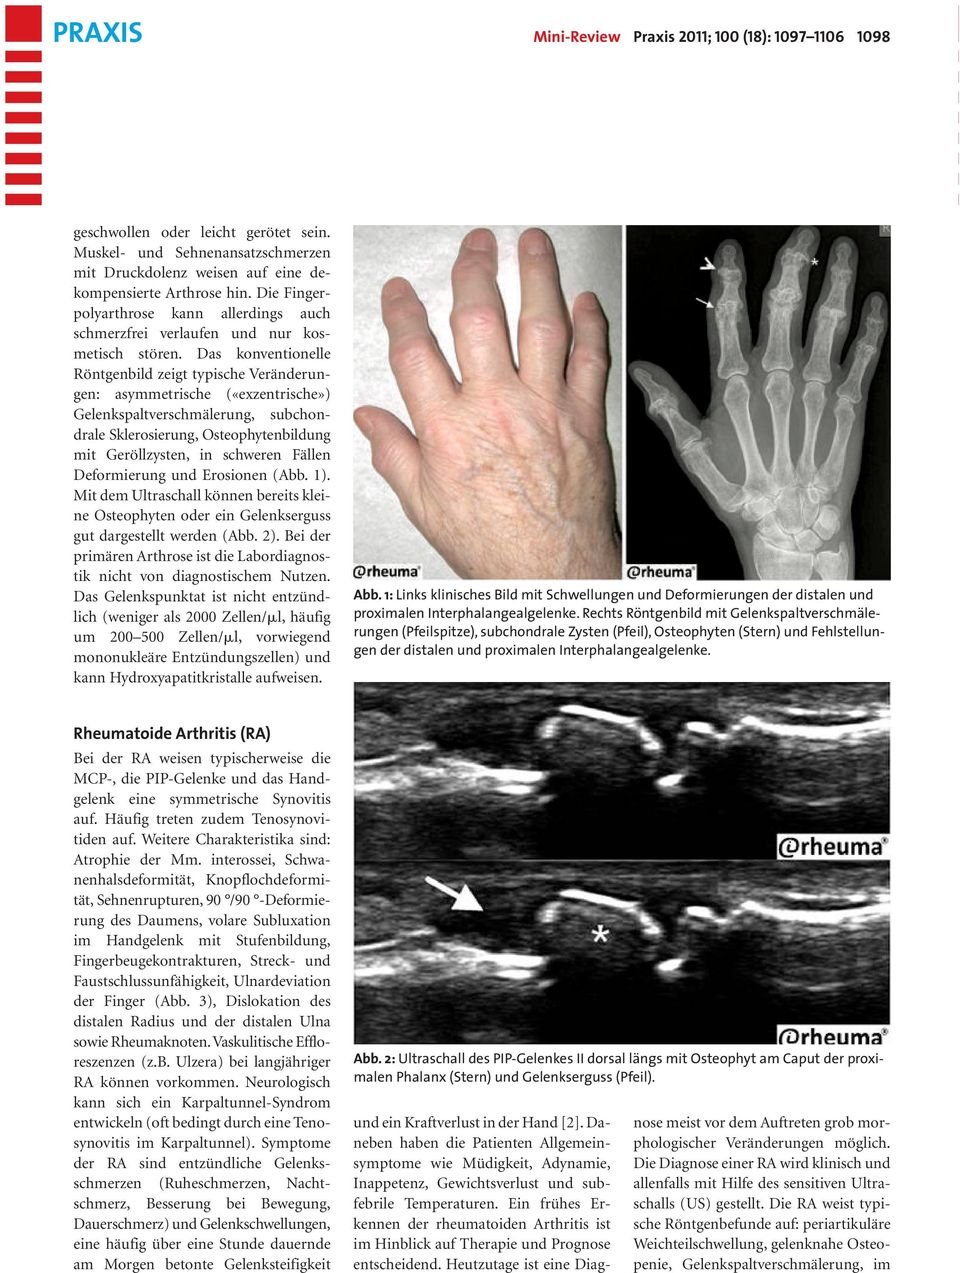 Das konventionelle Röntgenbild zeigt typische Veränderungen: asymmetrische («exzentrische») Gelenkspaltverschmälerung, subchondrale Sklerosierung, Osteophytenbildung mit Geröllzysten, in schweren